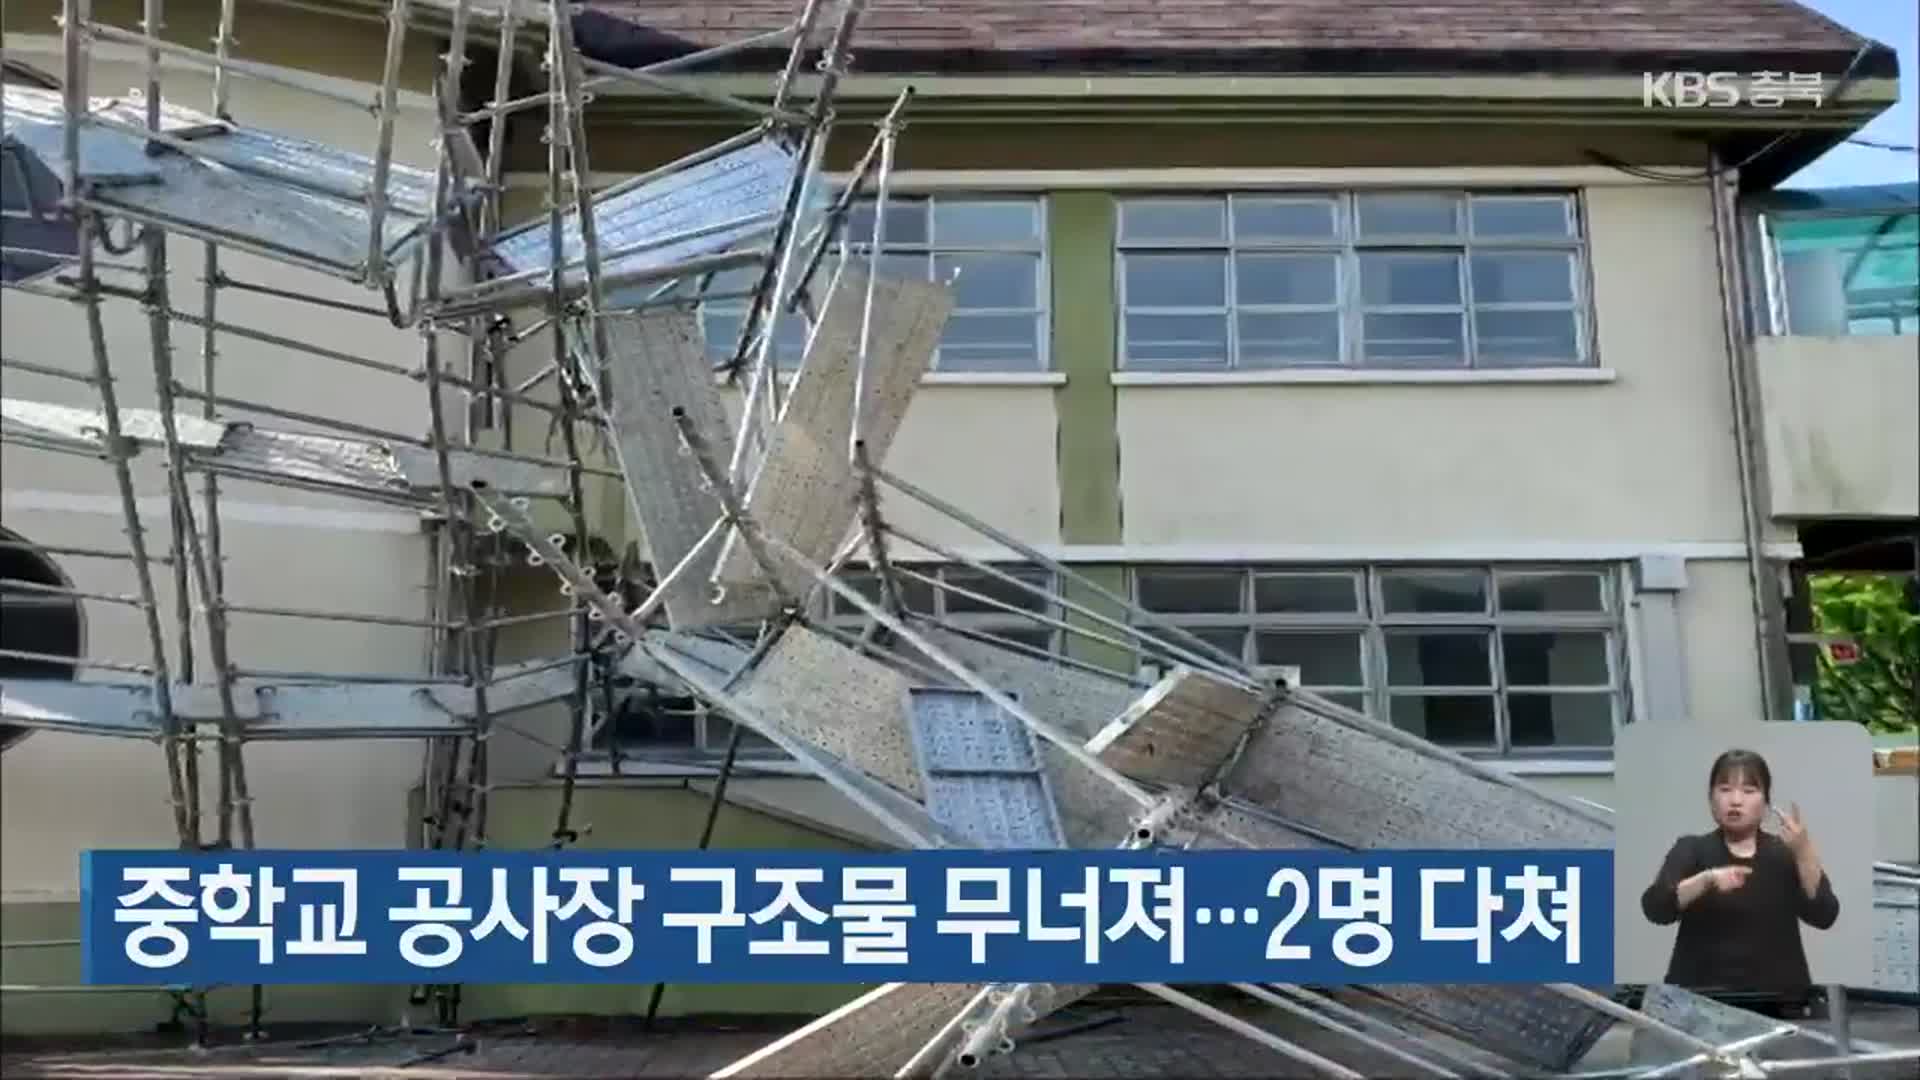 중학교 공사장 구조물 무너져…2명 다쳐